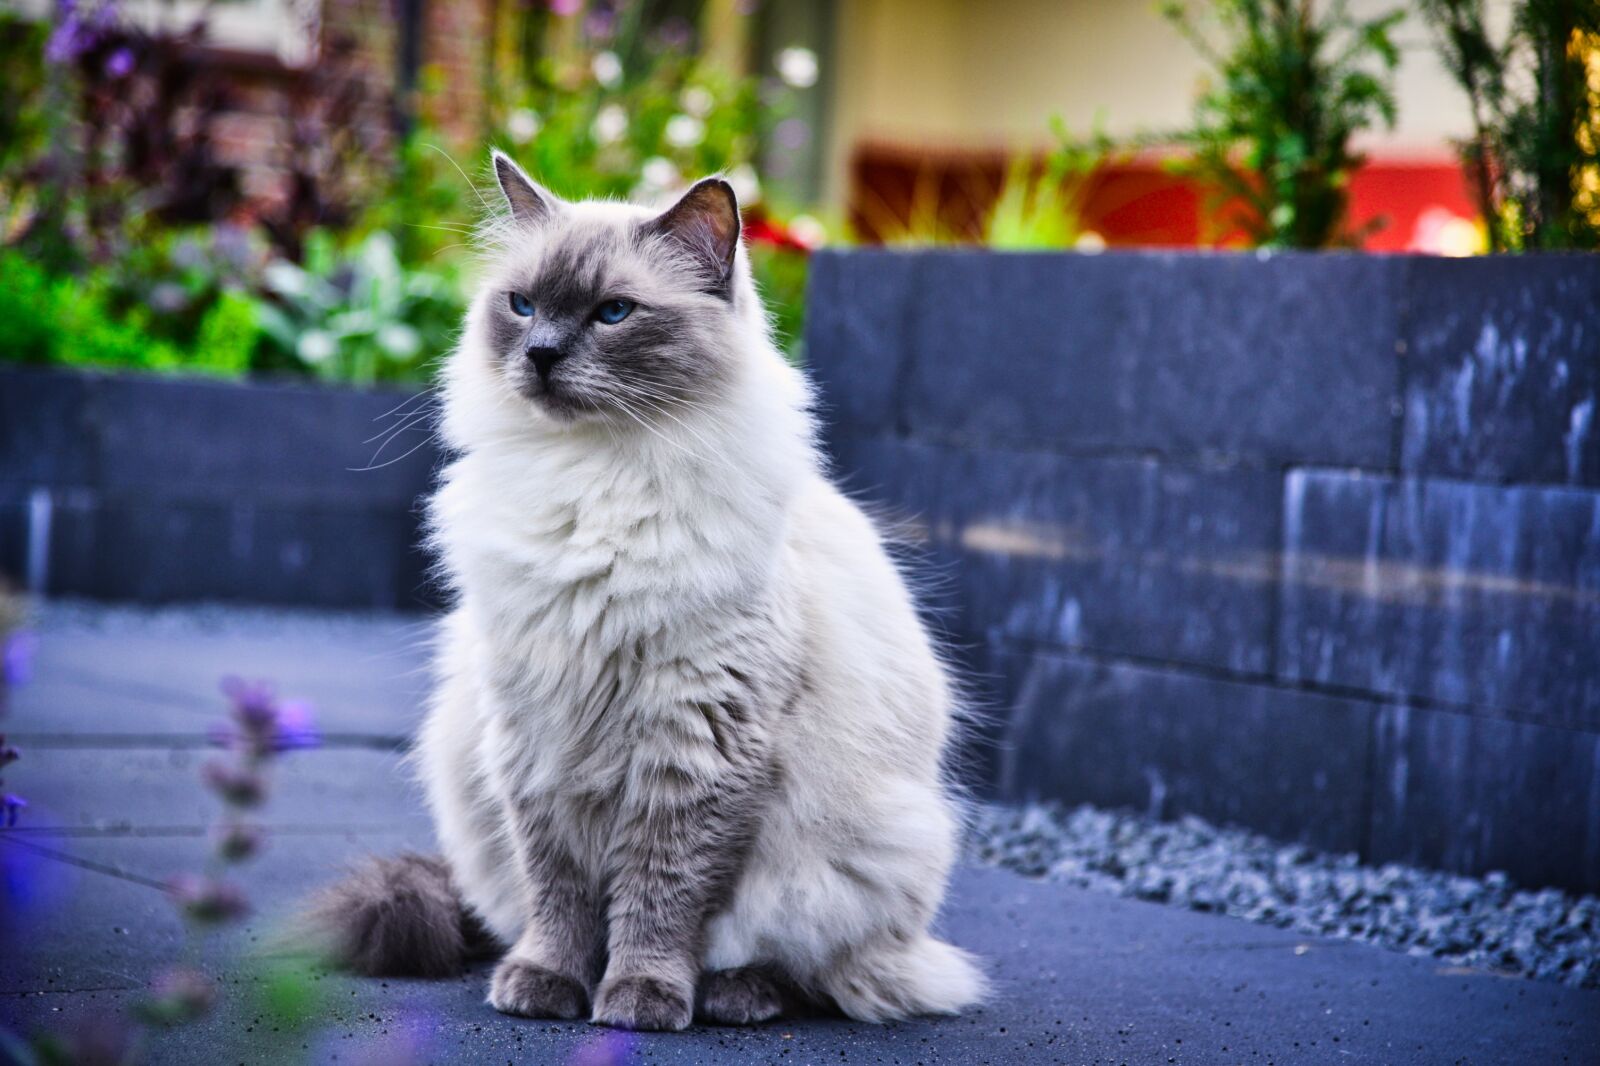 Nikon D610 sample photo. Cat, garden, pet photography